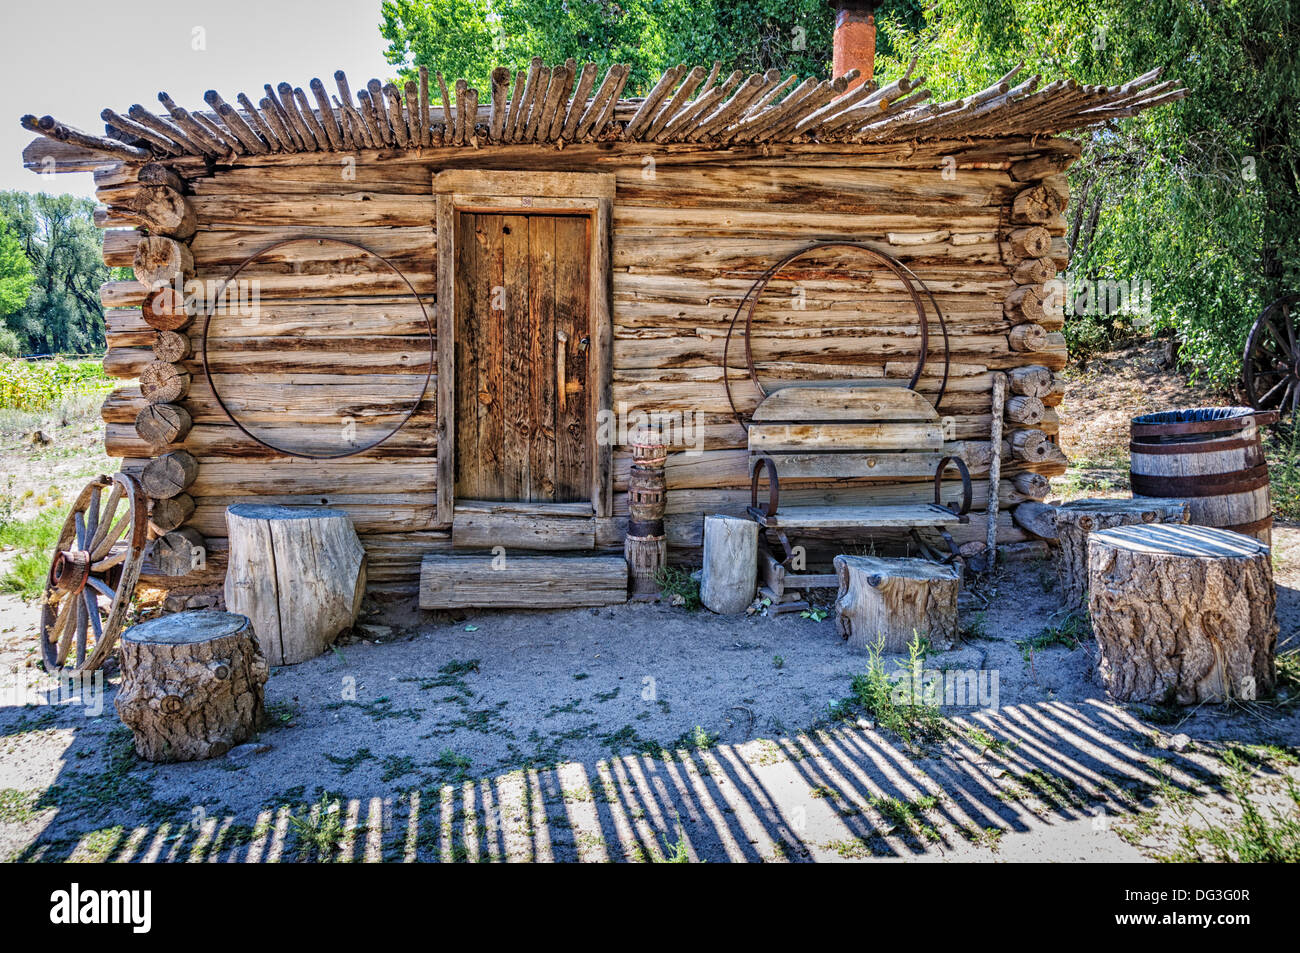 Carreteria (Wheelwright Shop), El Rancho de la Golondrinas, Los Pinos Road, Santa Fe, New Mexico Stock Photo